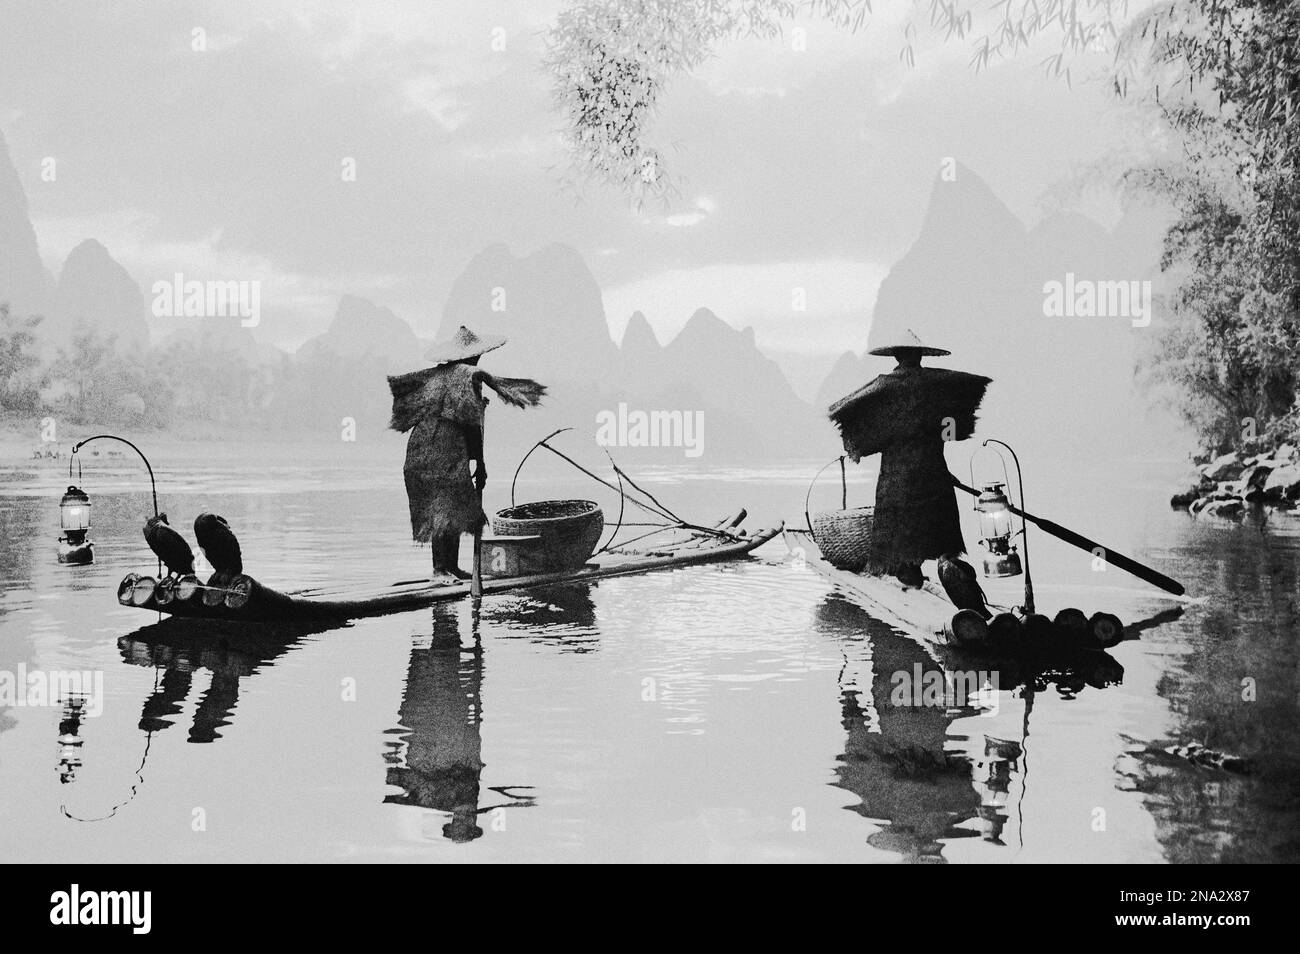 Schwarz-weiß-Bild von Fischern, die auf Booten auf einem ruhigen Fluss im Nebel mit Karstformationen in der Ferne stehen; China Stockfoto